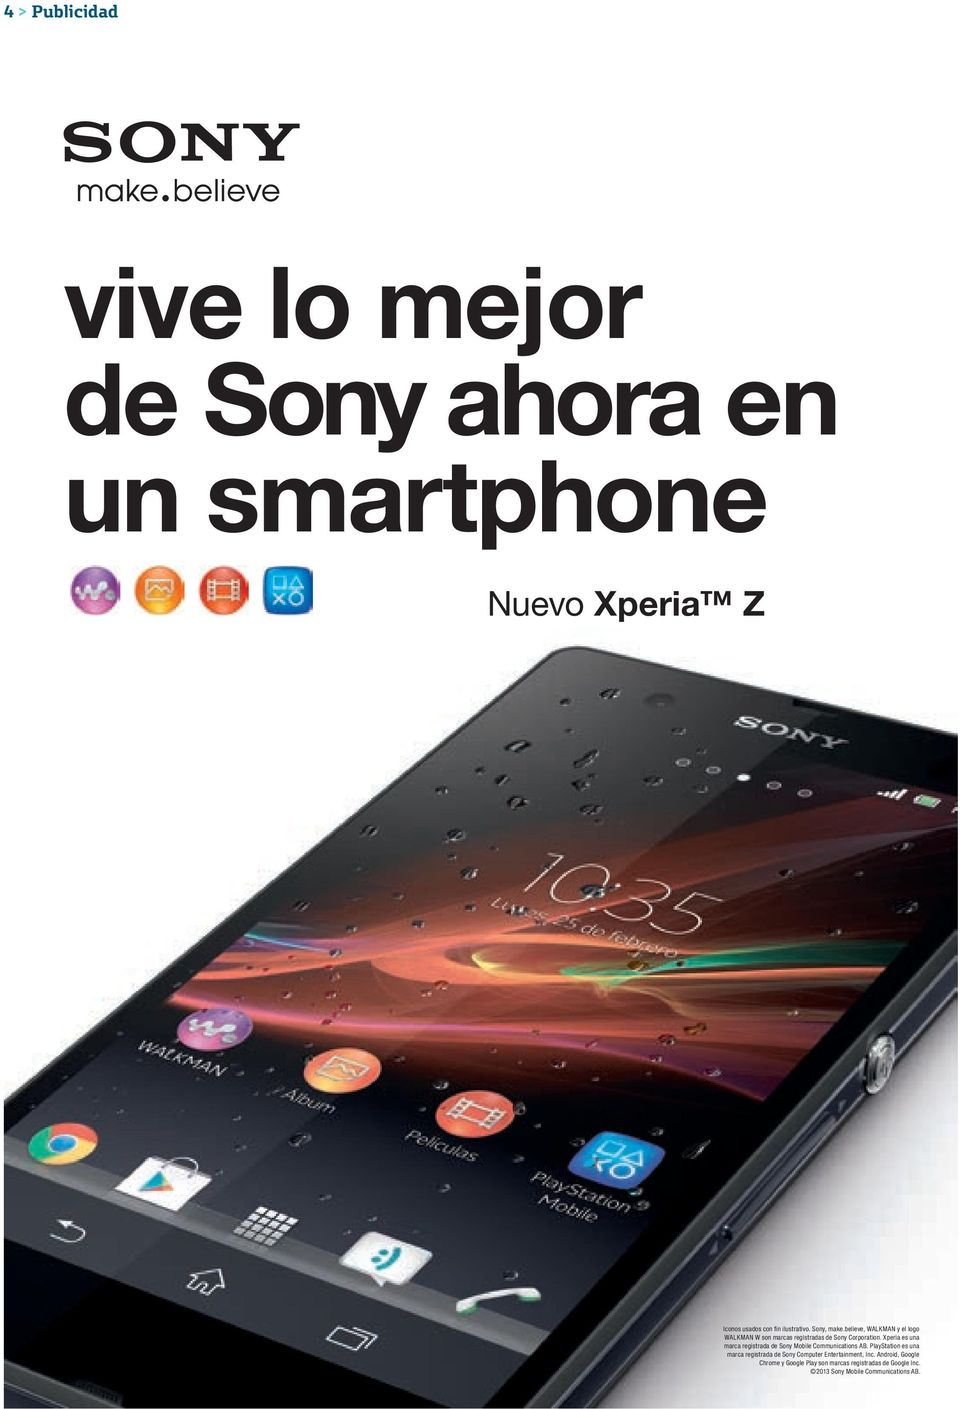 Xperia es una marca registrada de Sony Mobile Communications AB.